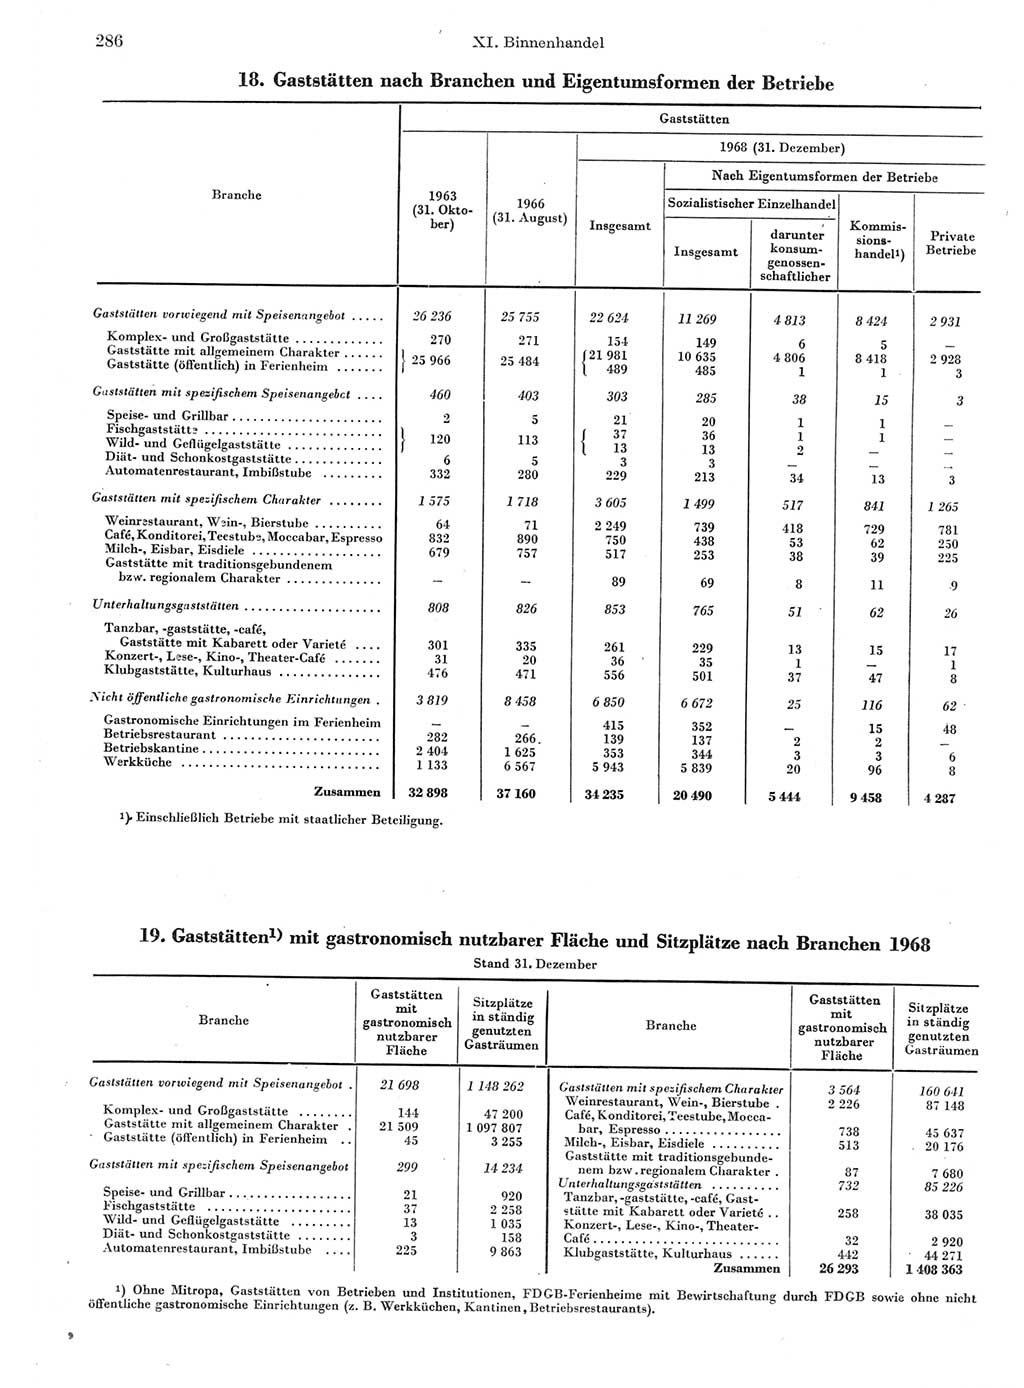 Statistisches Jahrbuch der Deutschen Demokratischen Republik (DDR) 1970, Seite 286 (Stat. Jb. DDR 1970, S. 286)